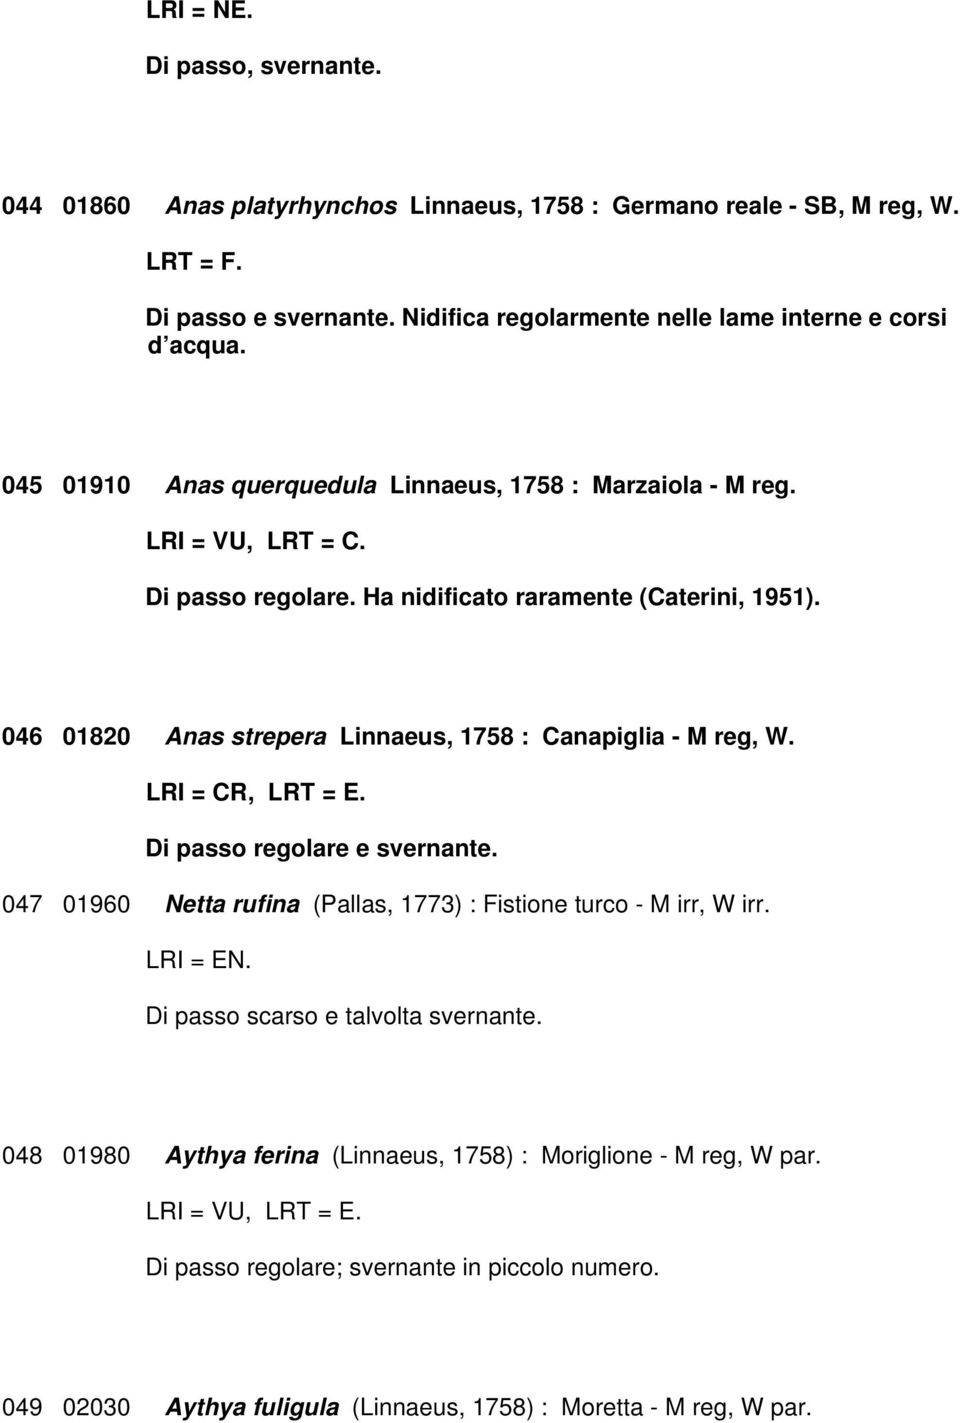 046 01820 Anas strepera Linnaeus, 1758 : Canapiglia - M reg, W. LRI = CR, LRT = E. Di passo regolare e svernante. 047 01960 Netta rufina (Pallas, 1773) : Fistione turco - M irr, W irr. LRI = EN.